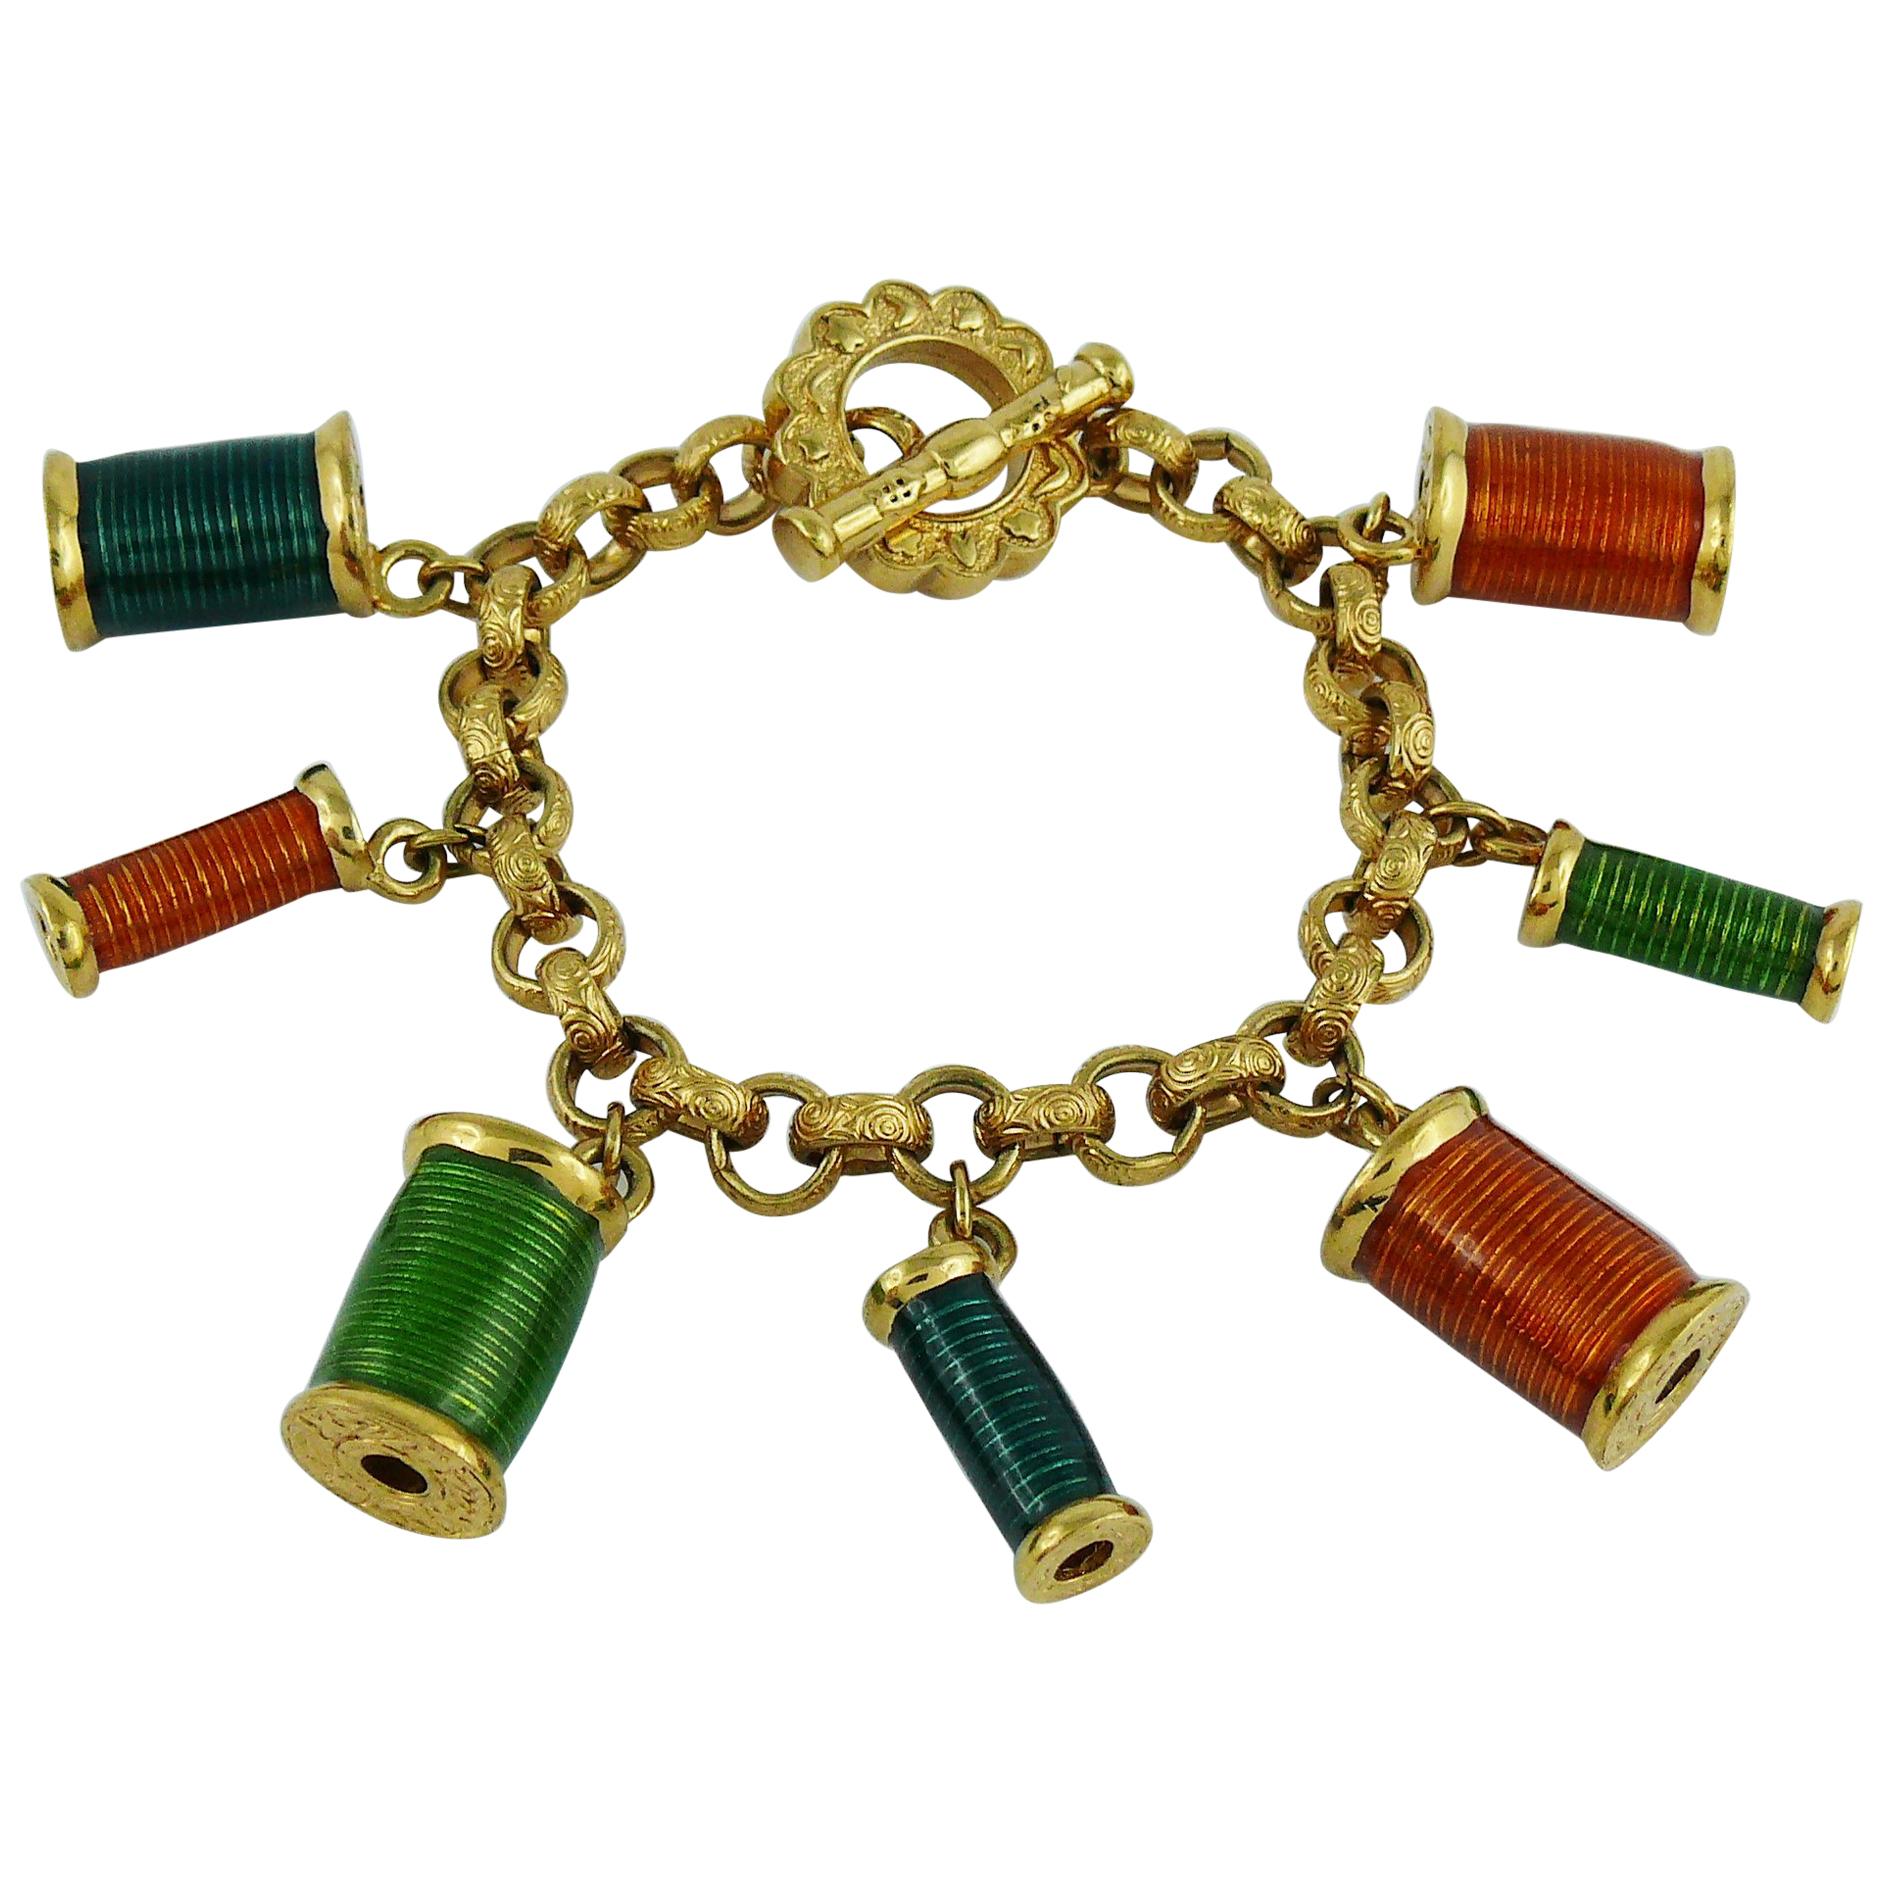 Nina Ricci Vintage Multicolored Sewing Thread Spool Charm Bracelet